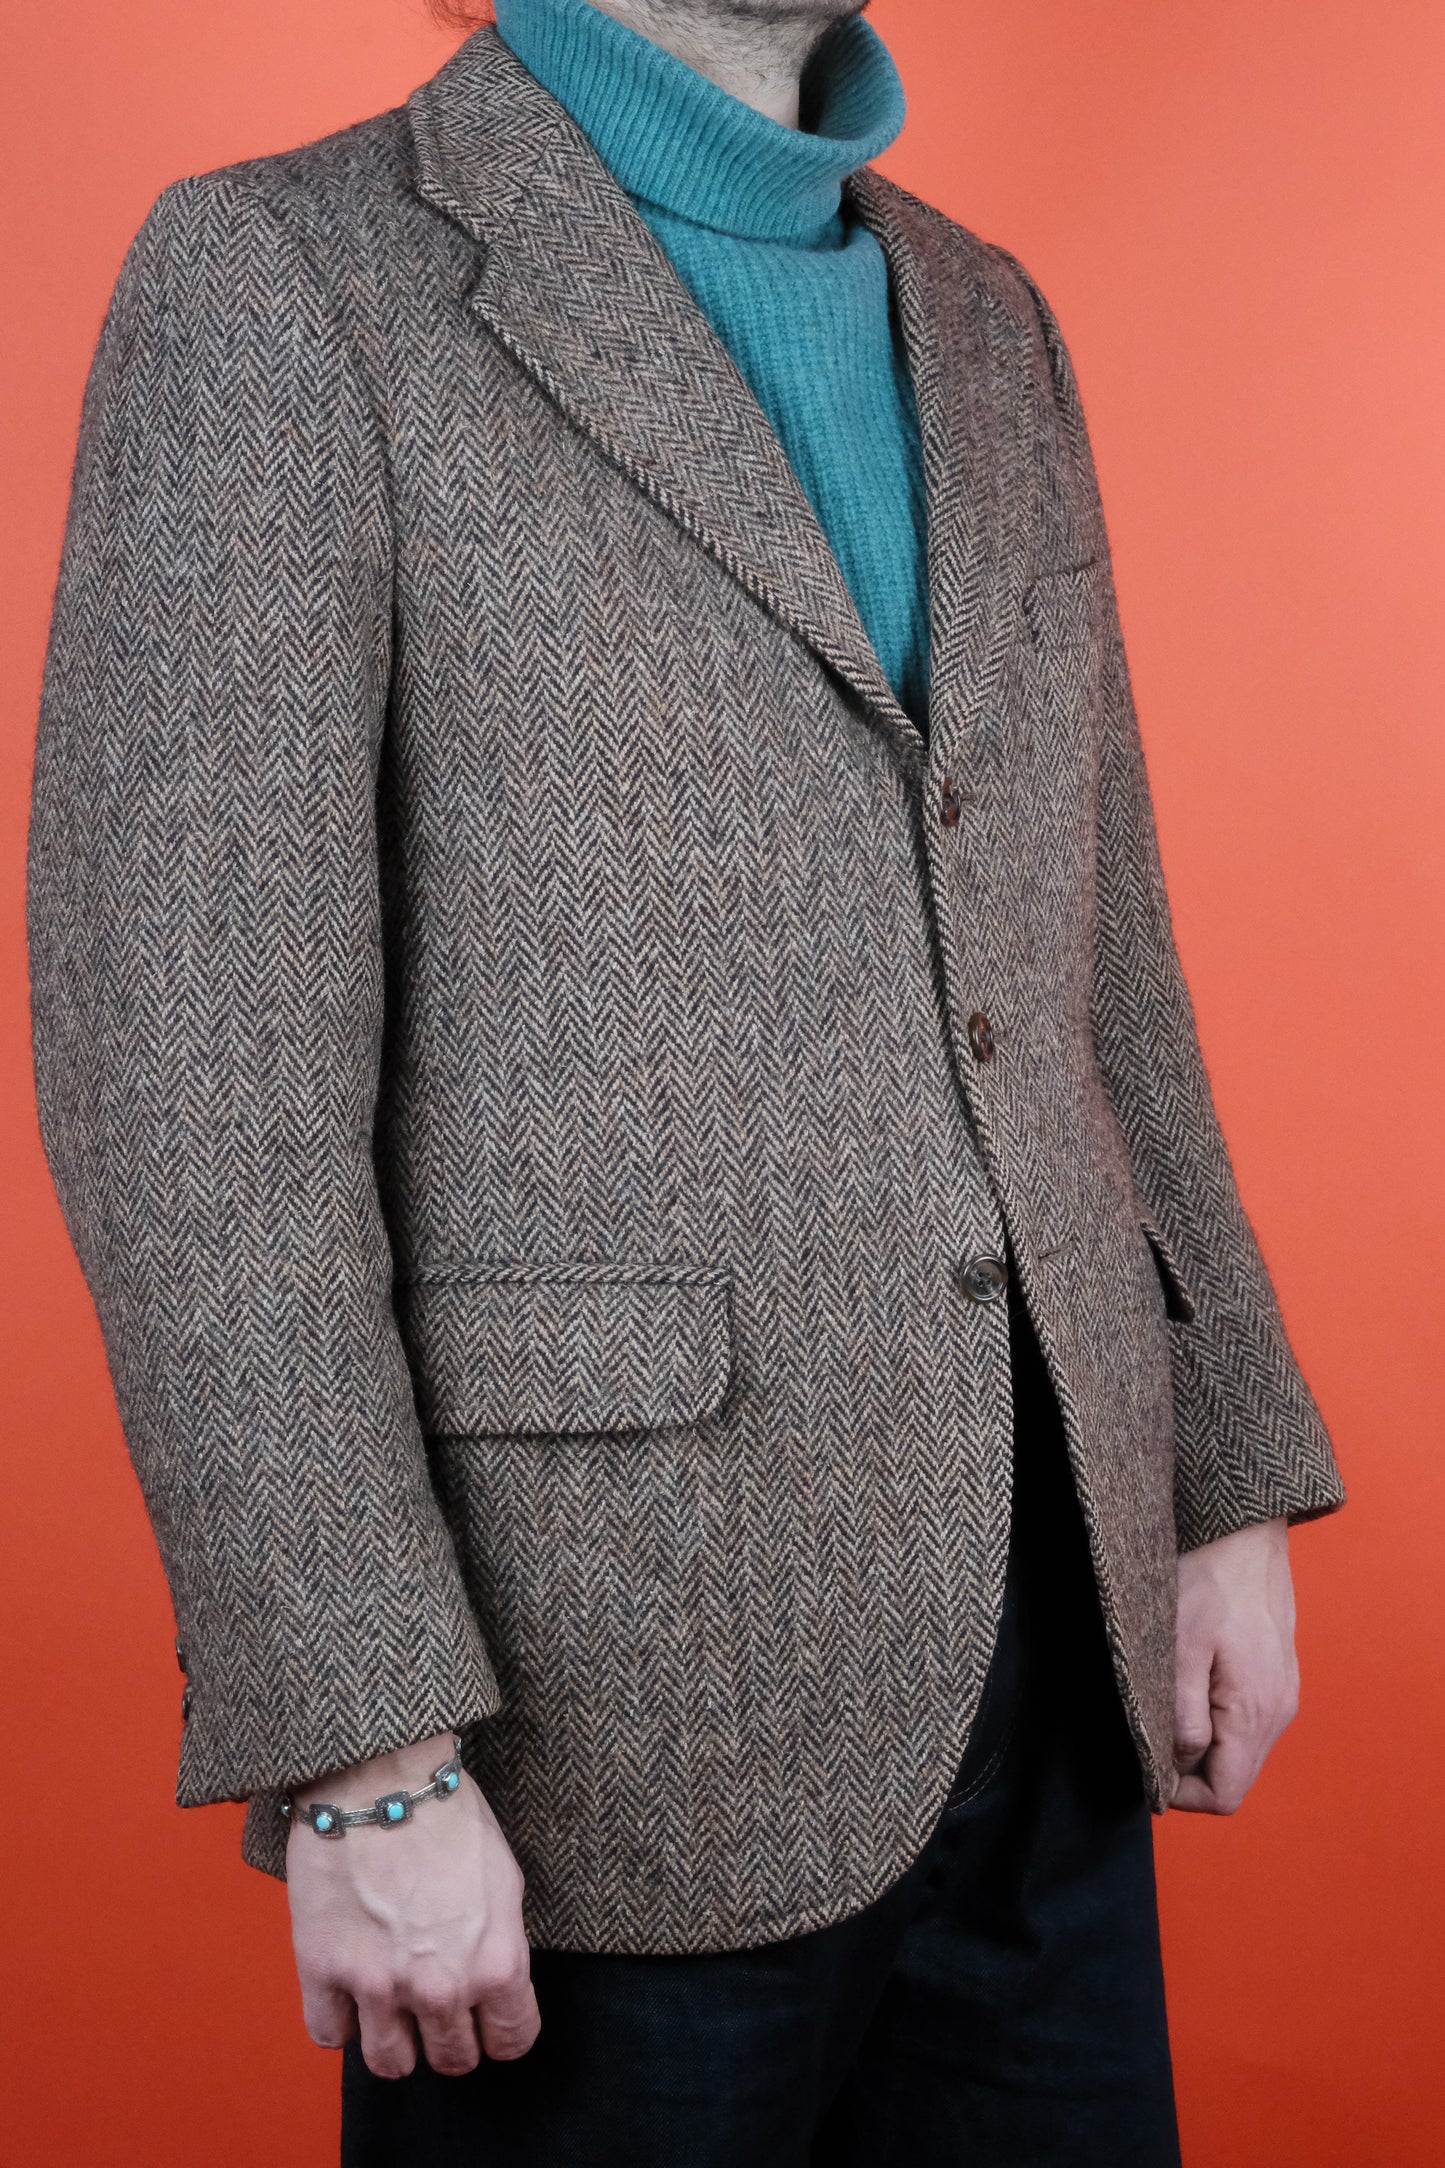 Herringbone Harris Tweed Wool Suit Jacket 'M' - vintage clothing clochard92.com